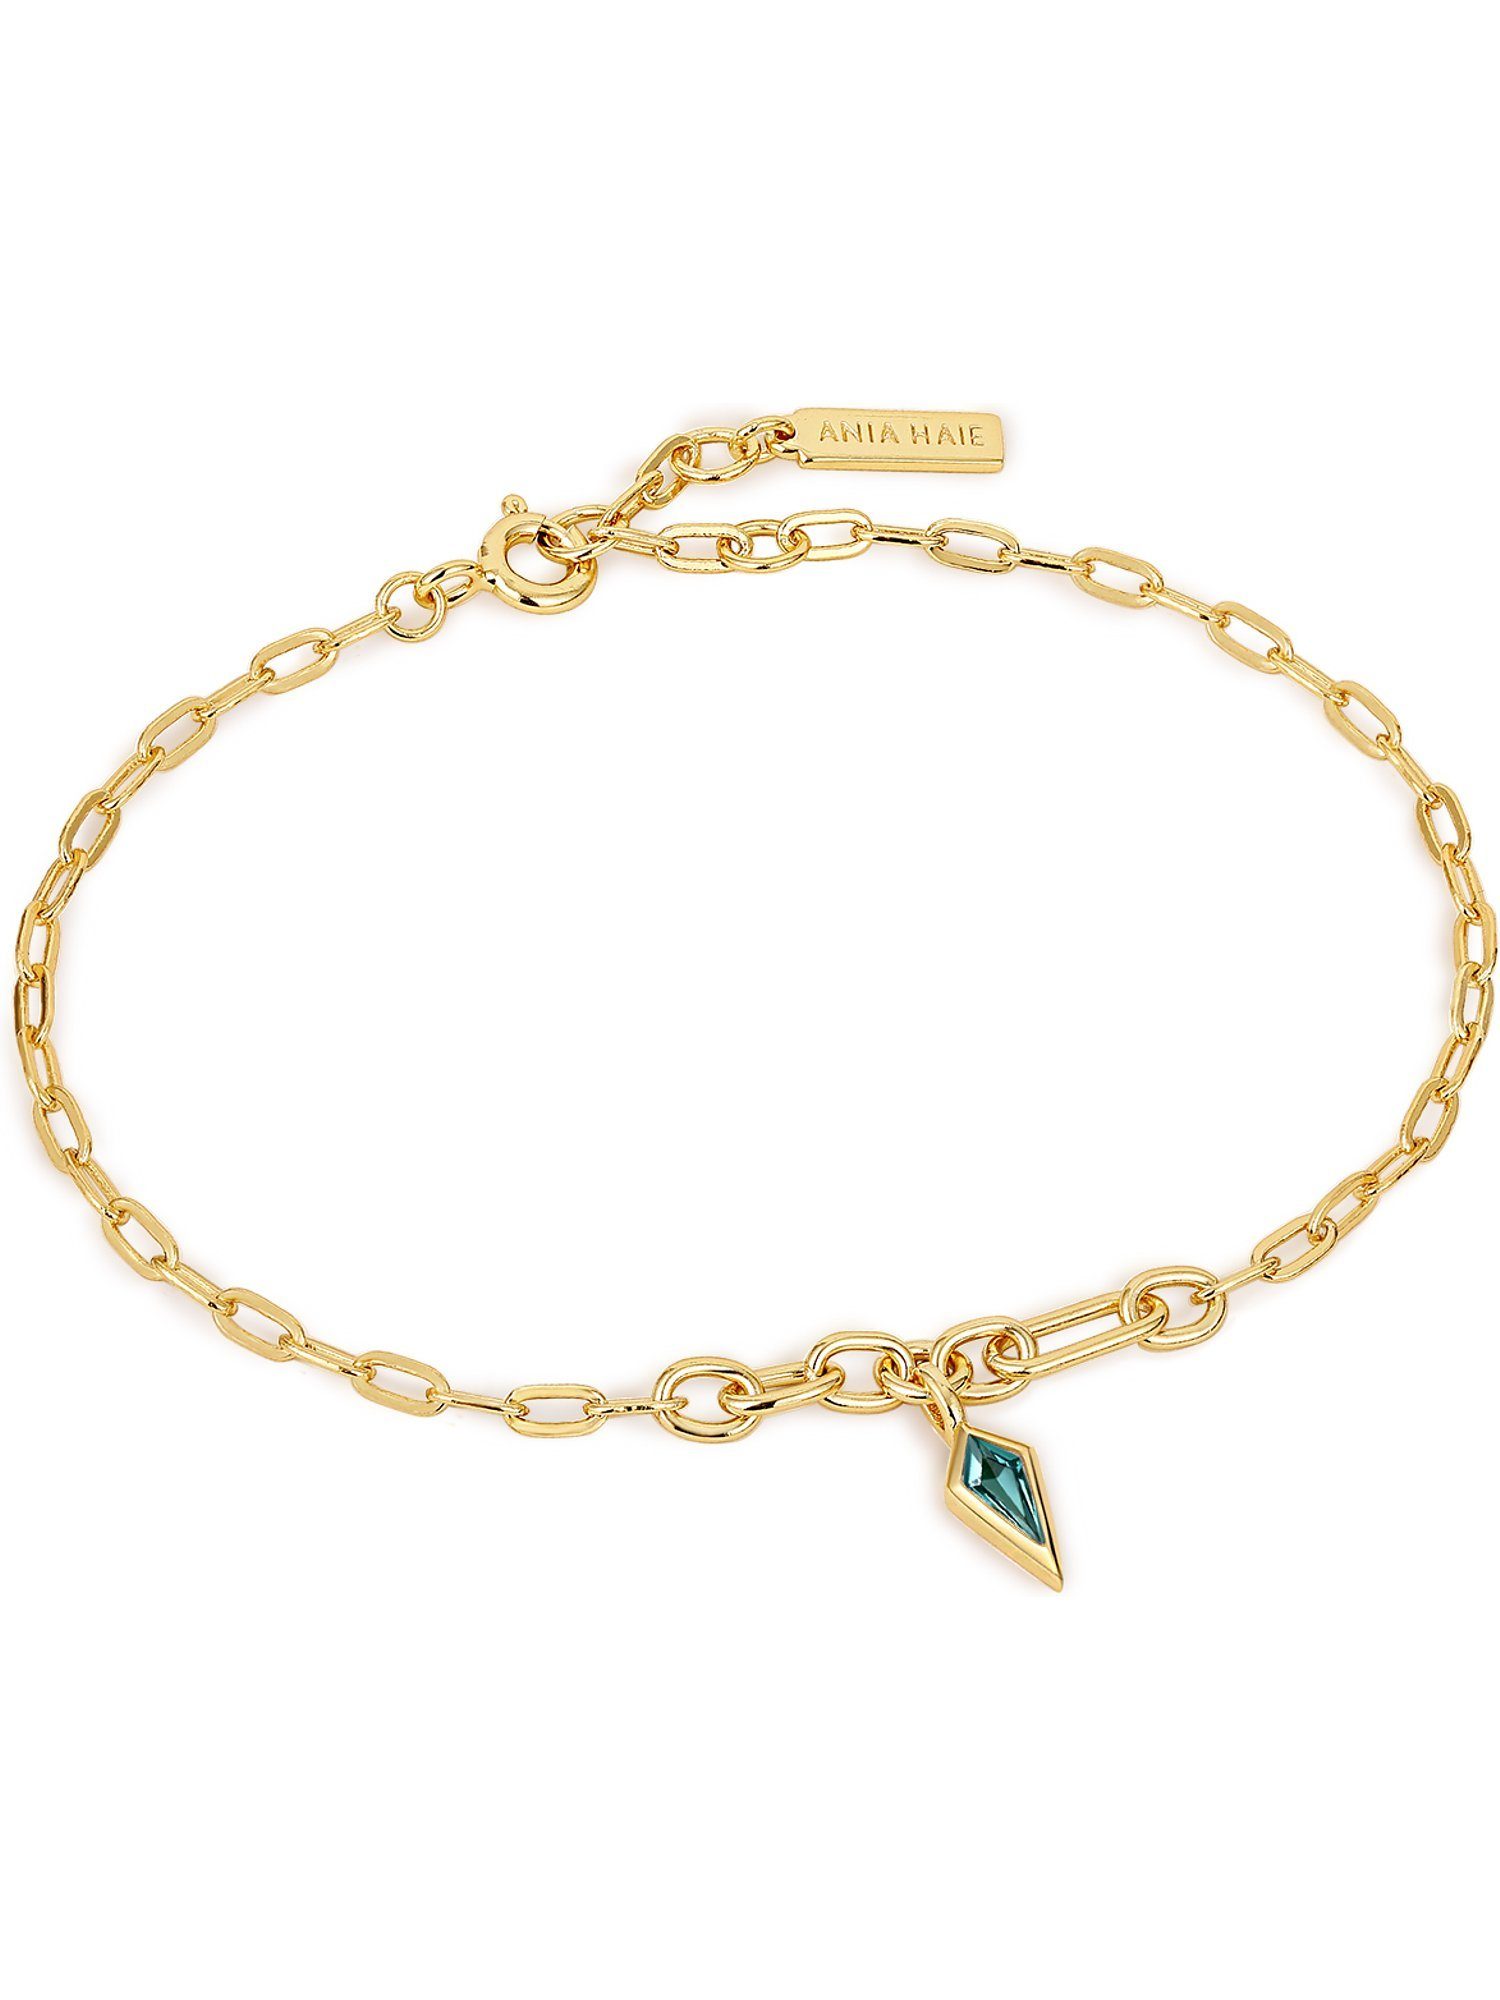 925er Damen-Armband grün Haie Silber Zirkonia, Haie trendig Ania Ania gold, Armband